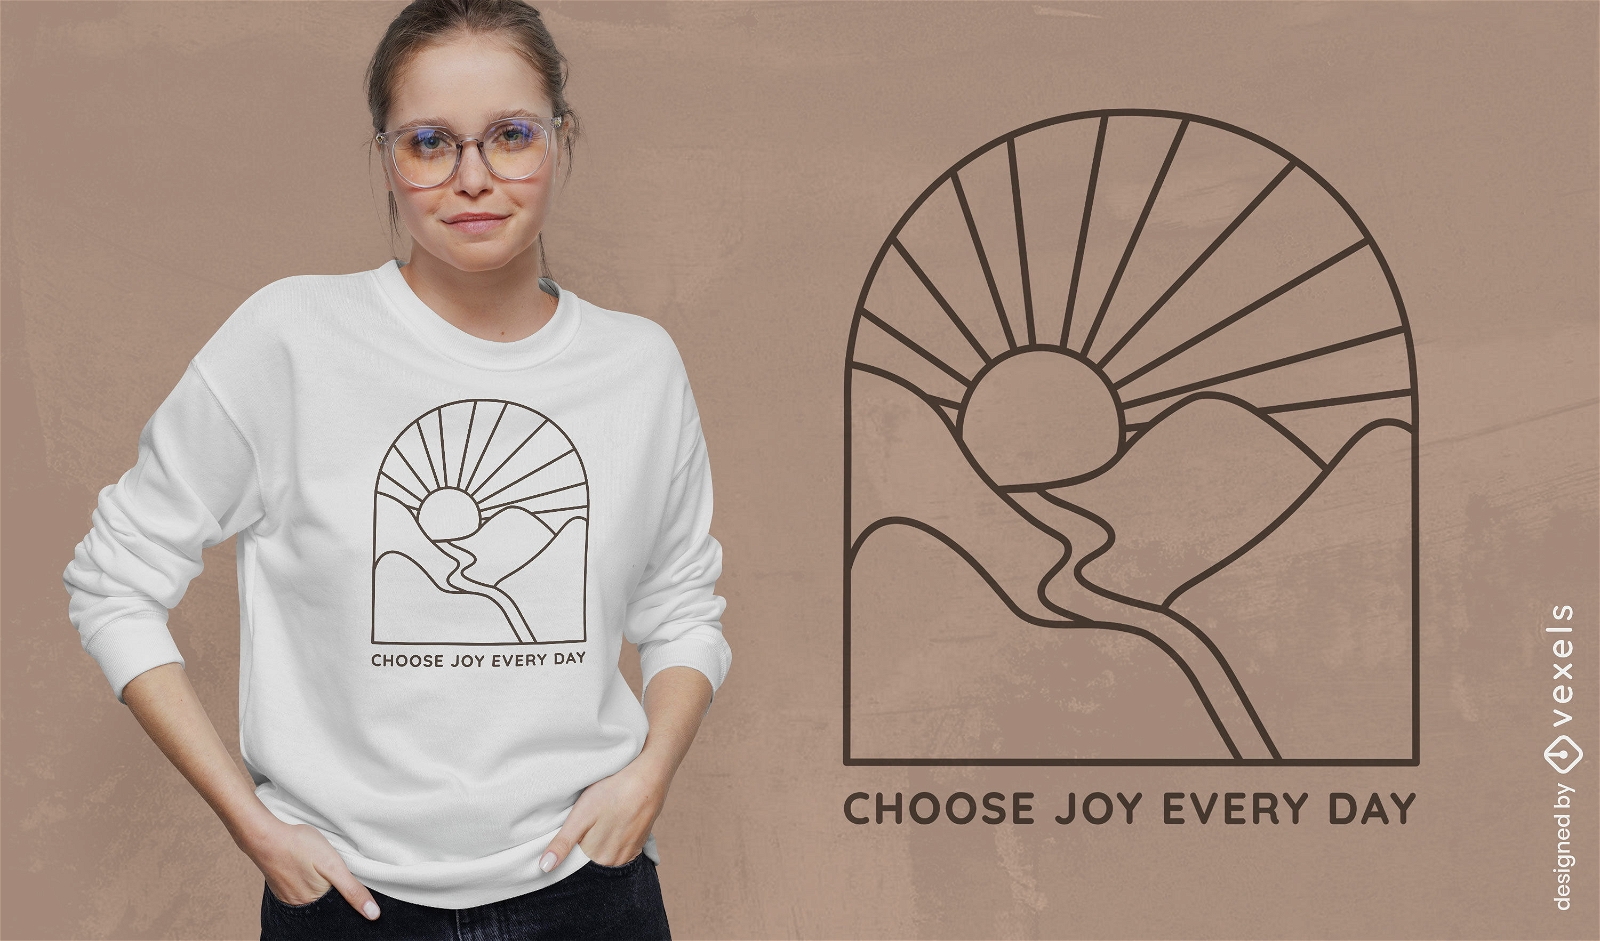 W?hlen Sie das Joy Daily-Sweatshirt-Design